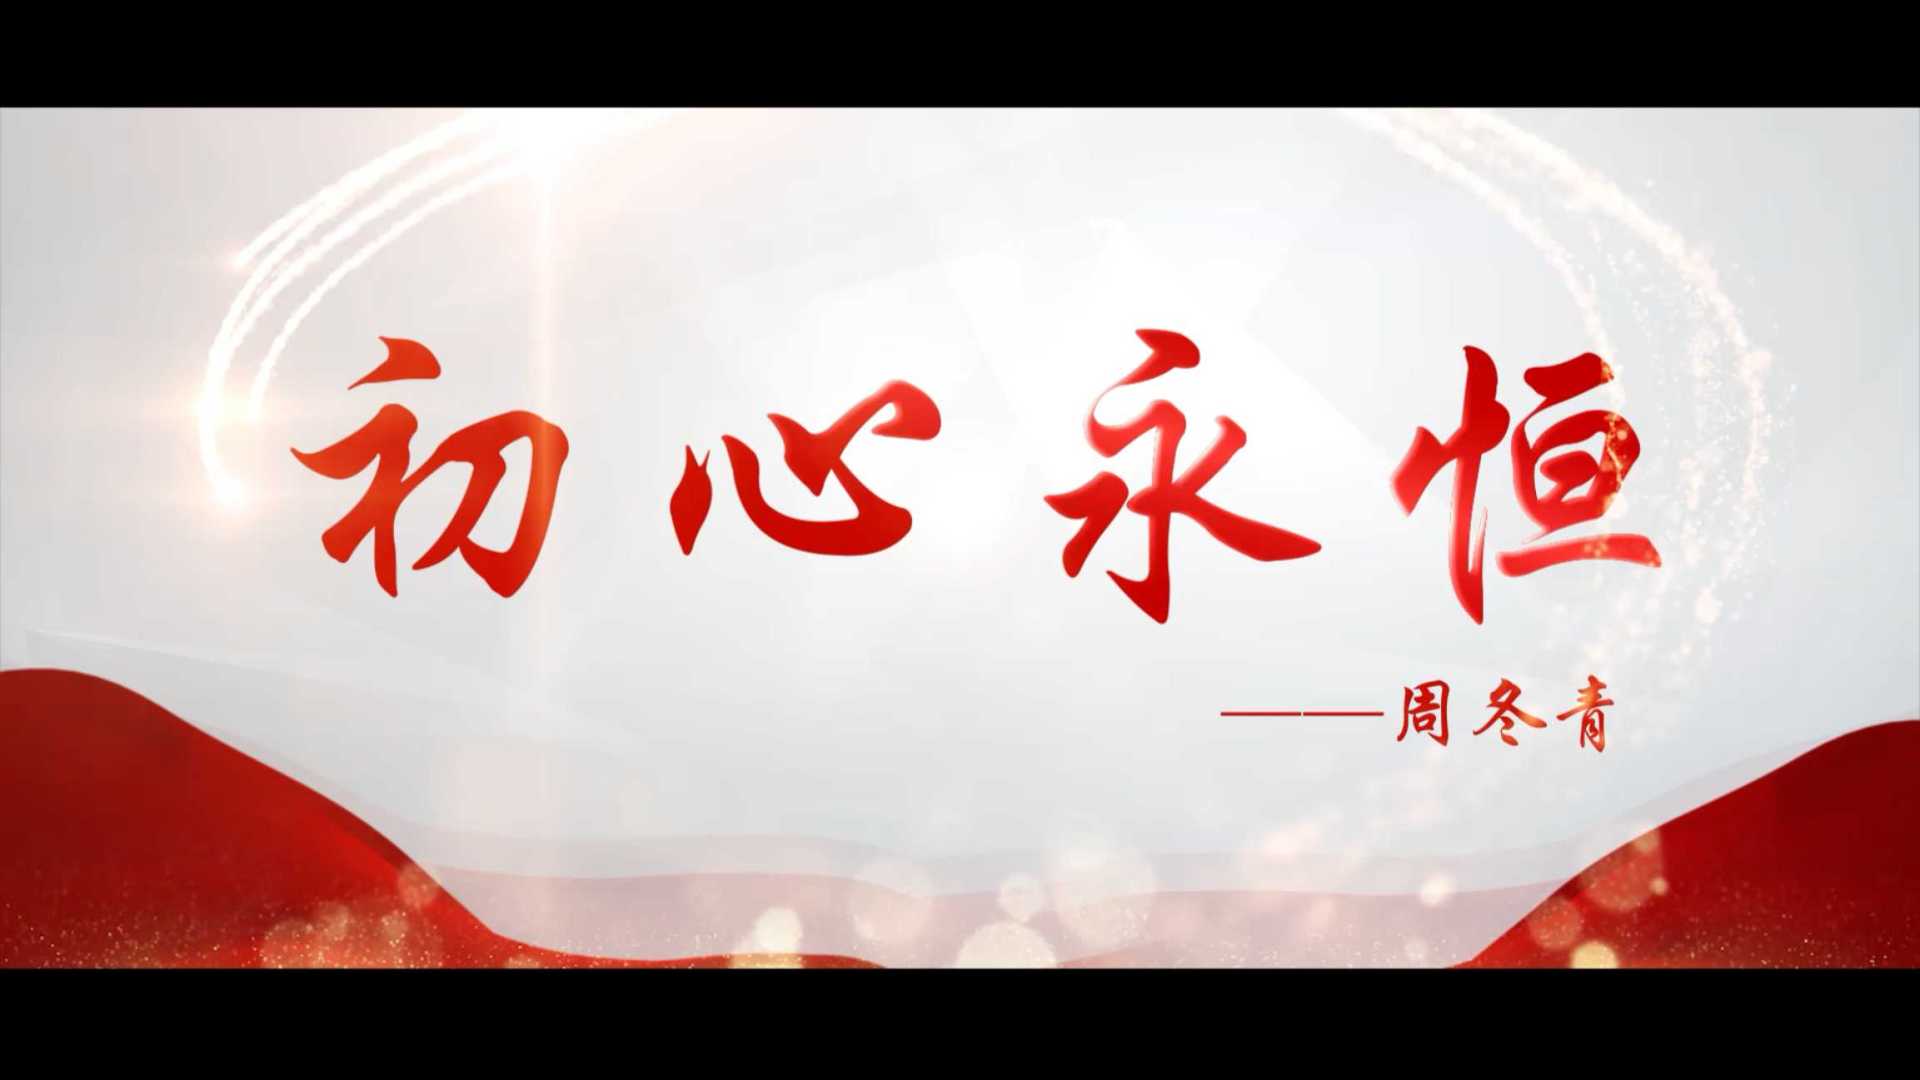 琅琊区重点工程管理处人物宣传片《初心永恒—周冬青》